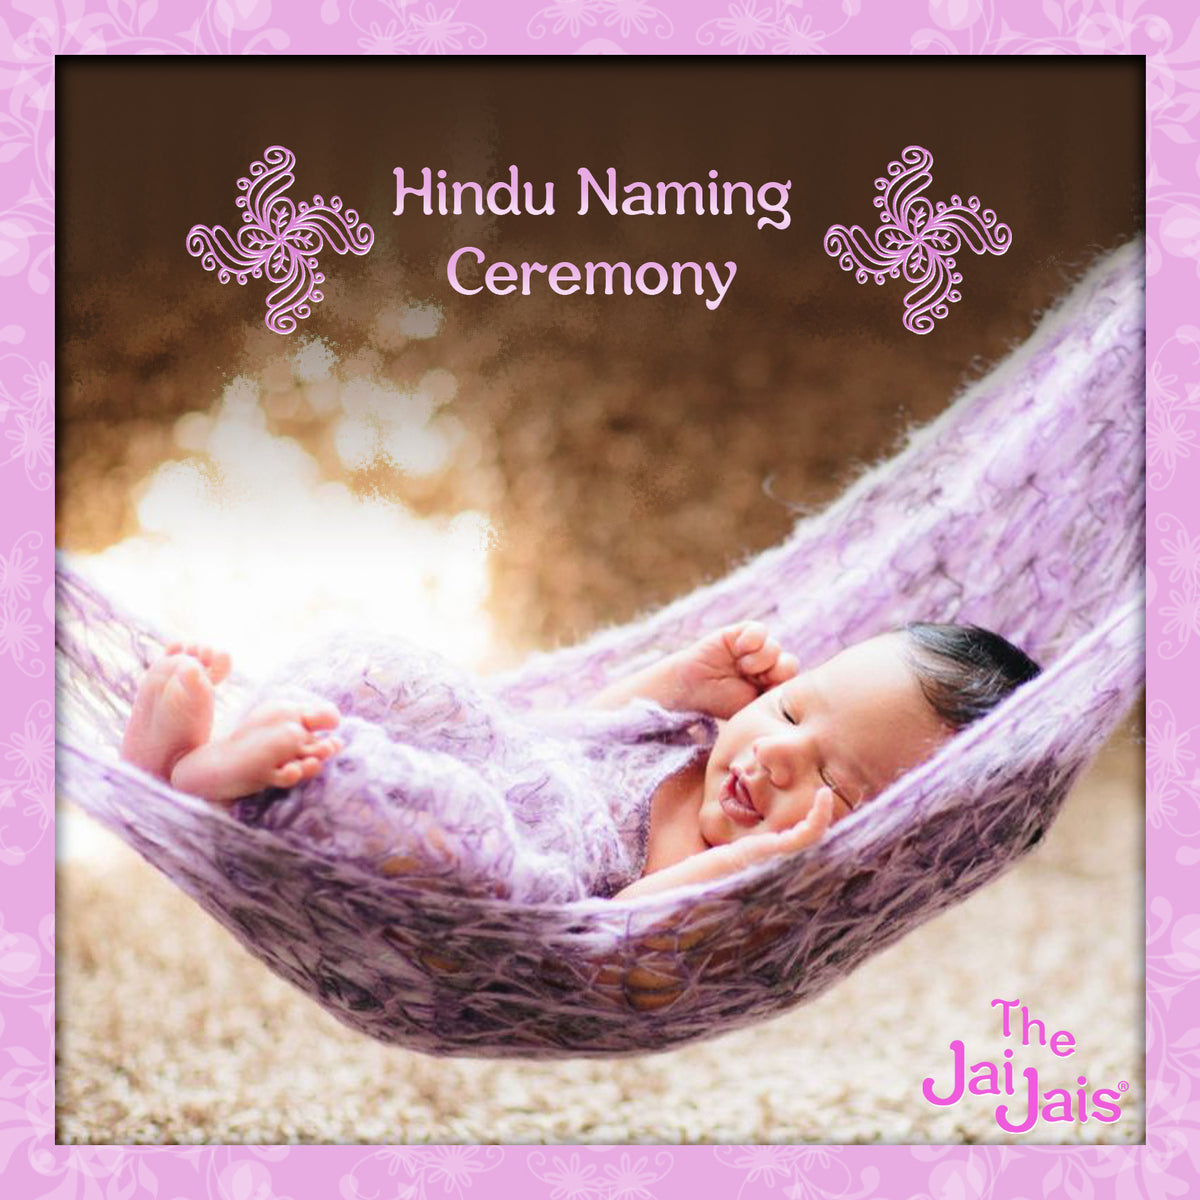 Hindu Naming Ceremony | The Jai Jais